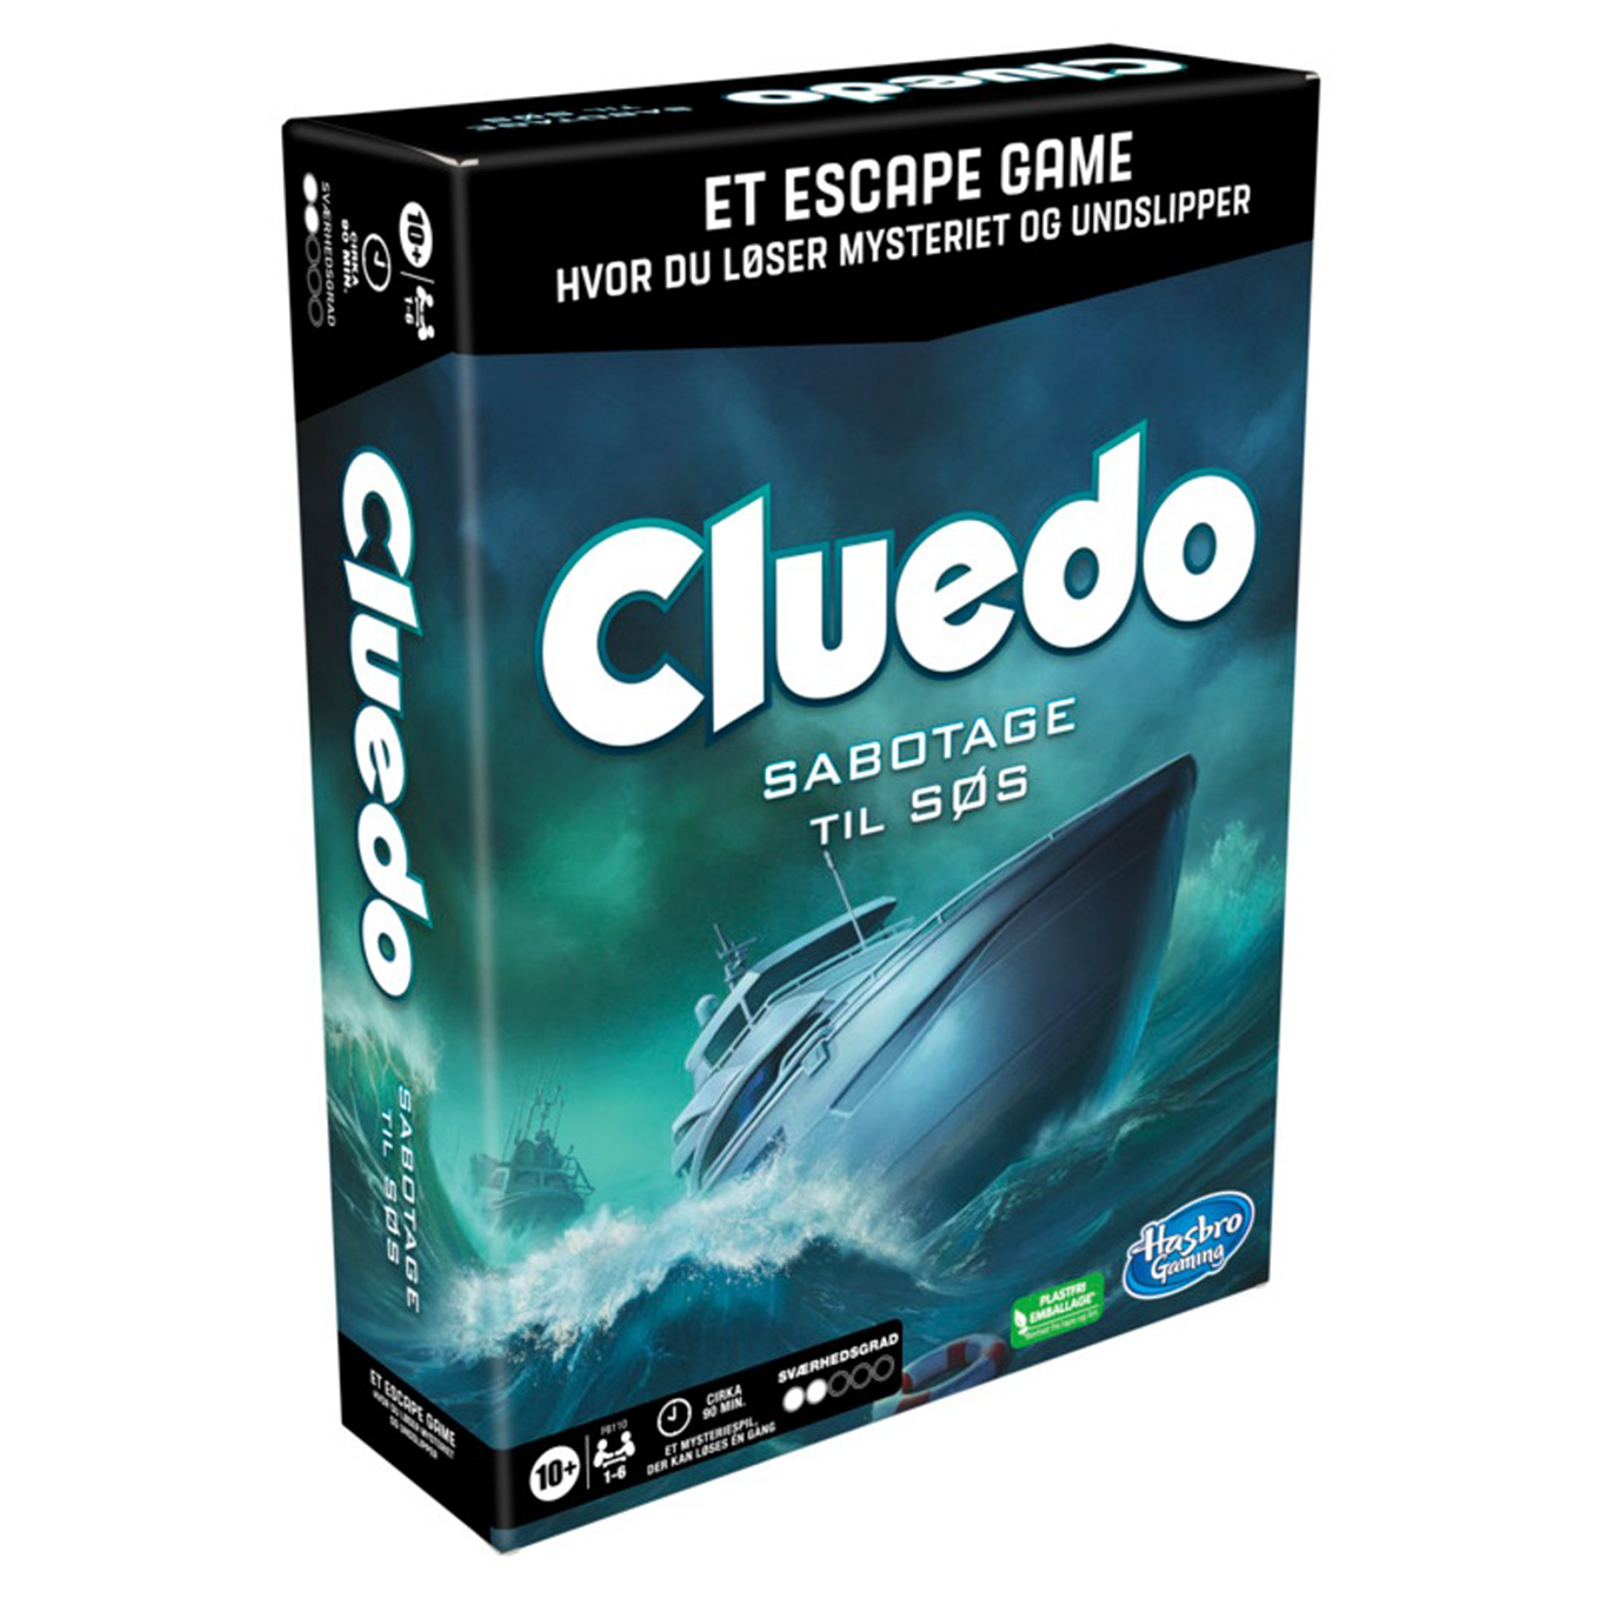 Cluedo - Sabotage til Søs